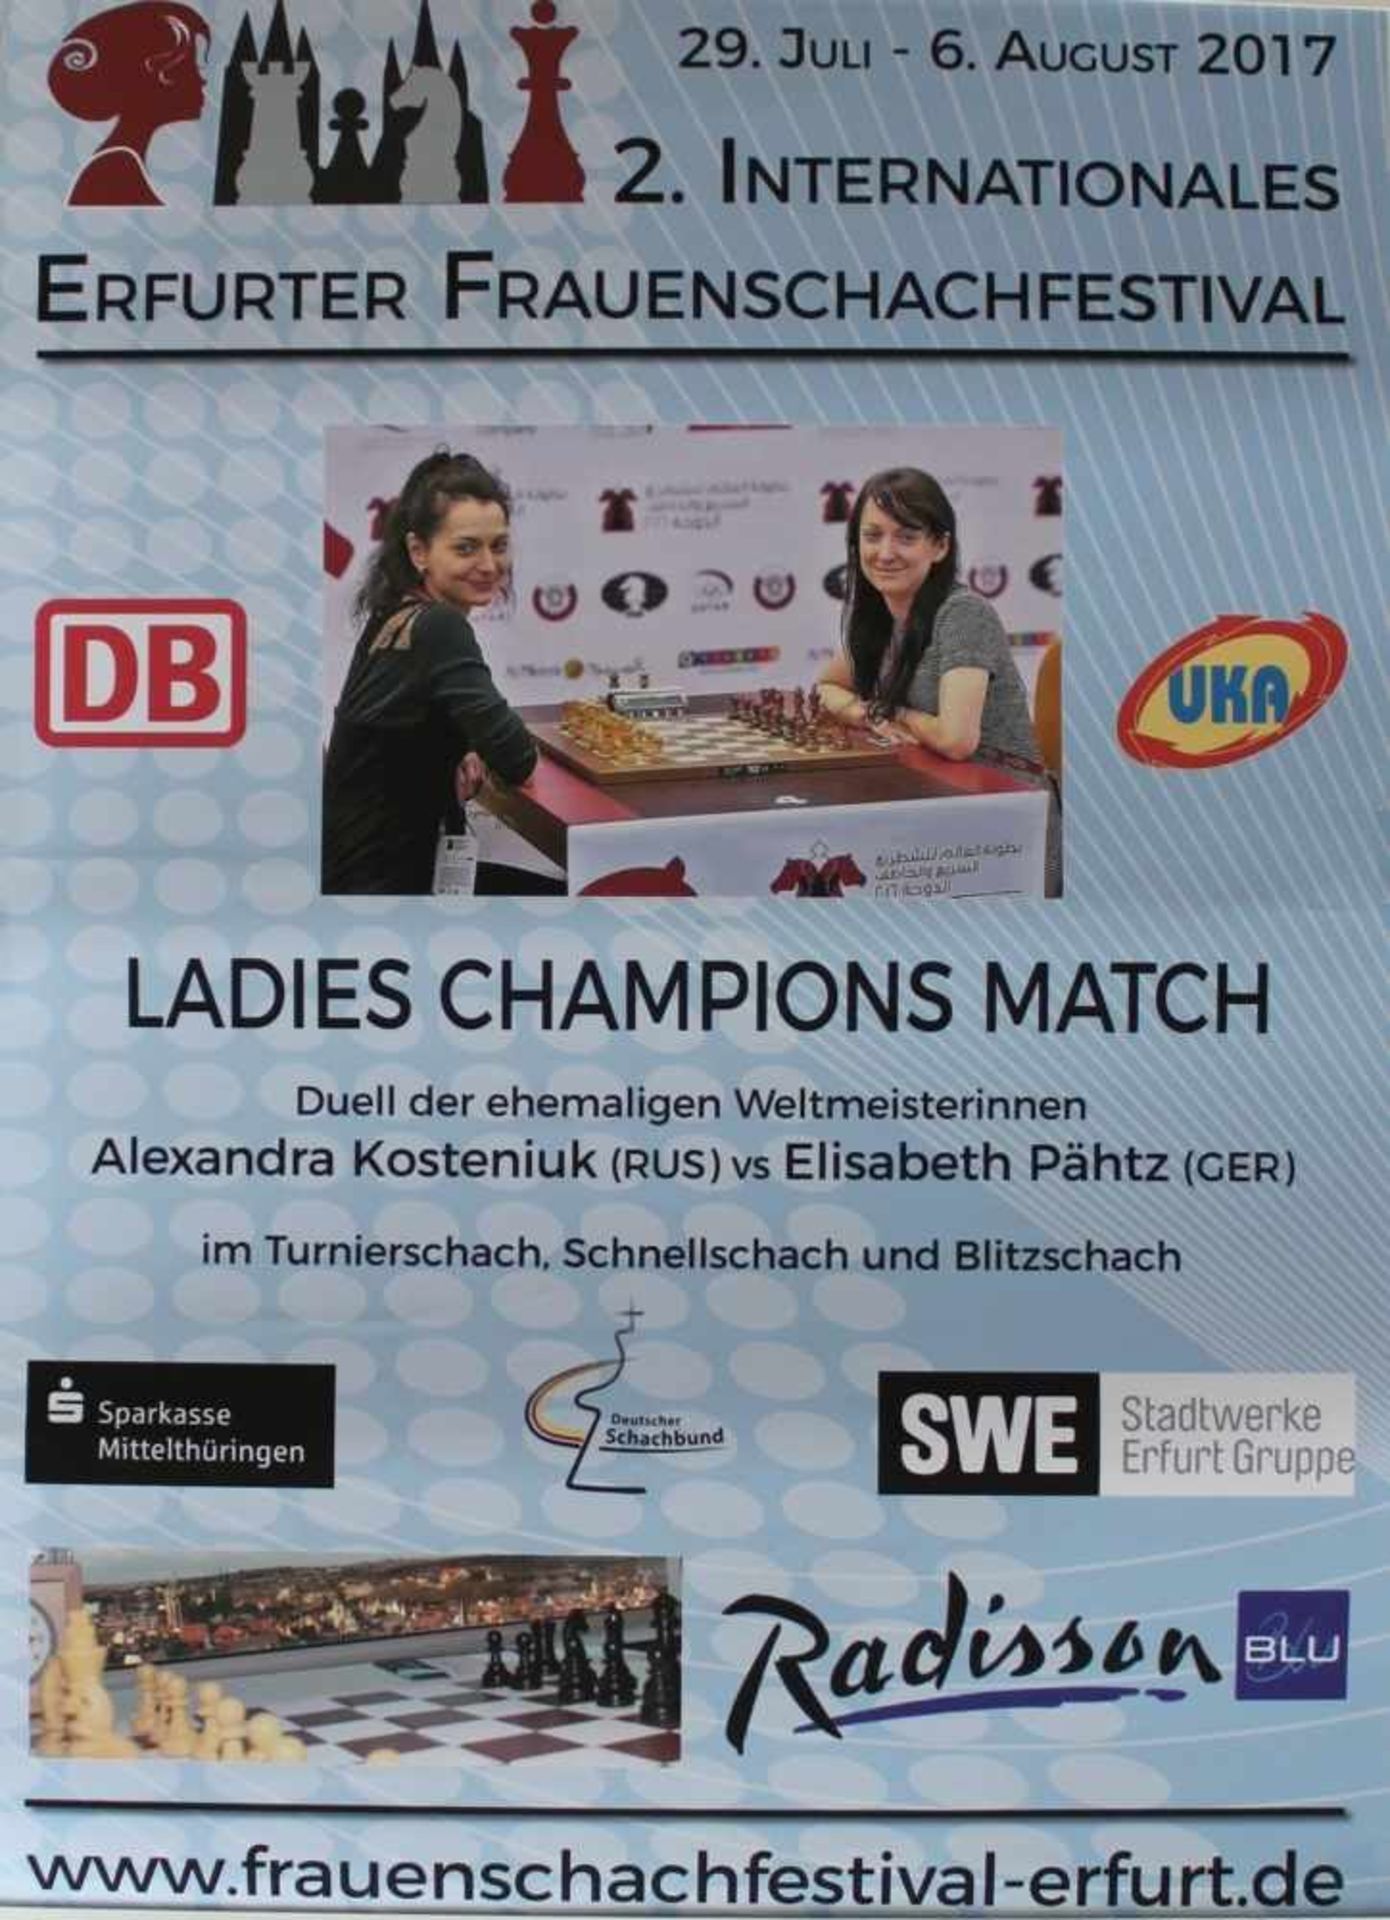 Plakat. Erfurt 2014.Farbiges Plakat zum "1. Internationales Erfurter Frauenschachfestival 2014